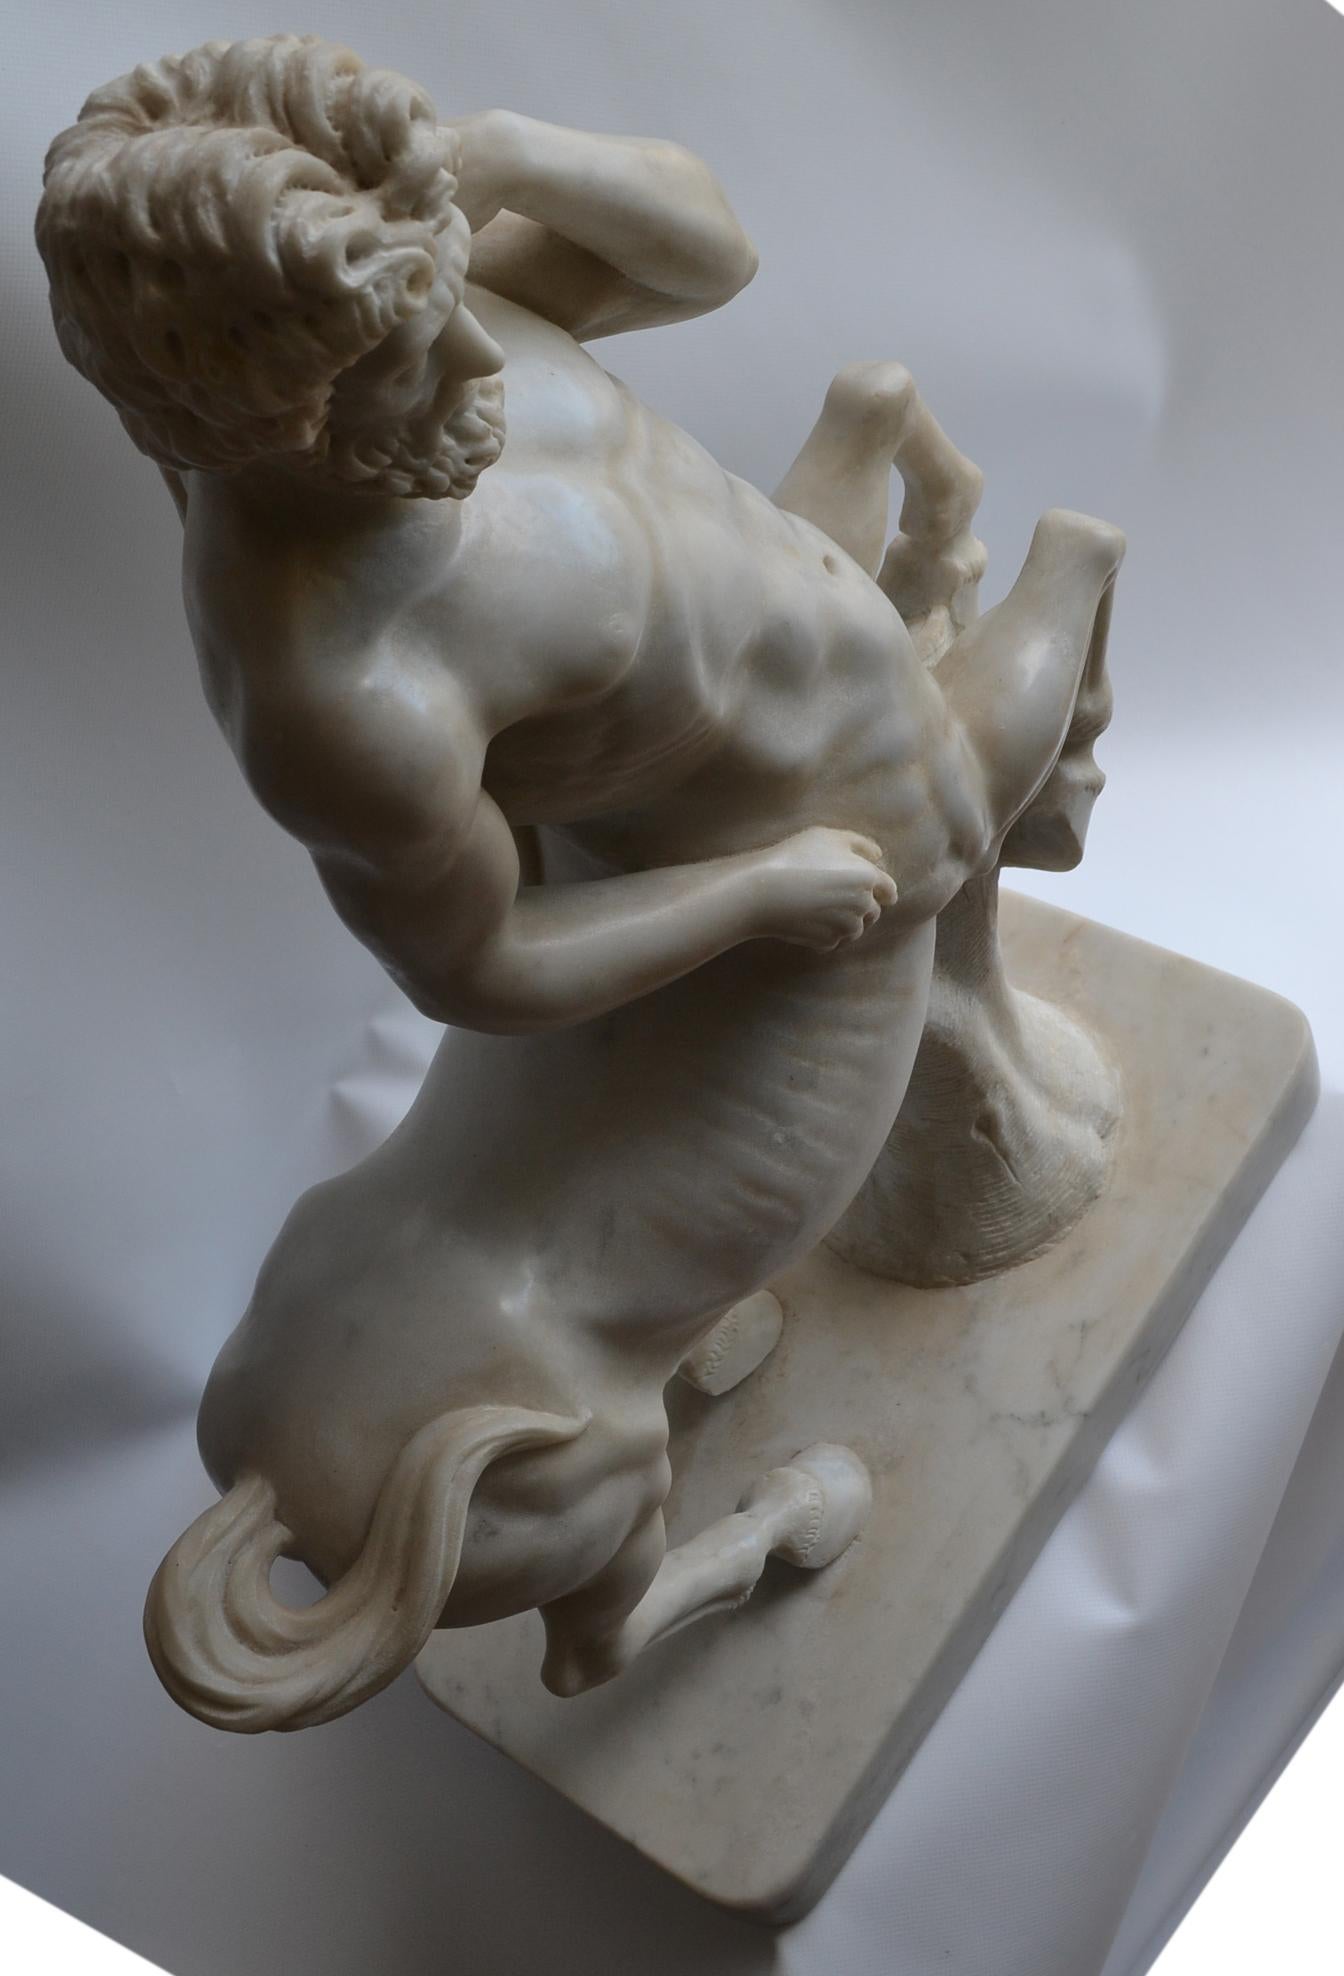 Hand-Crafted Centauro scolpito su marmo bianco di Carrara -made in italy -fatto a mano